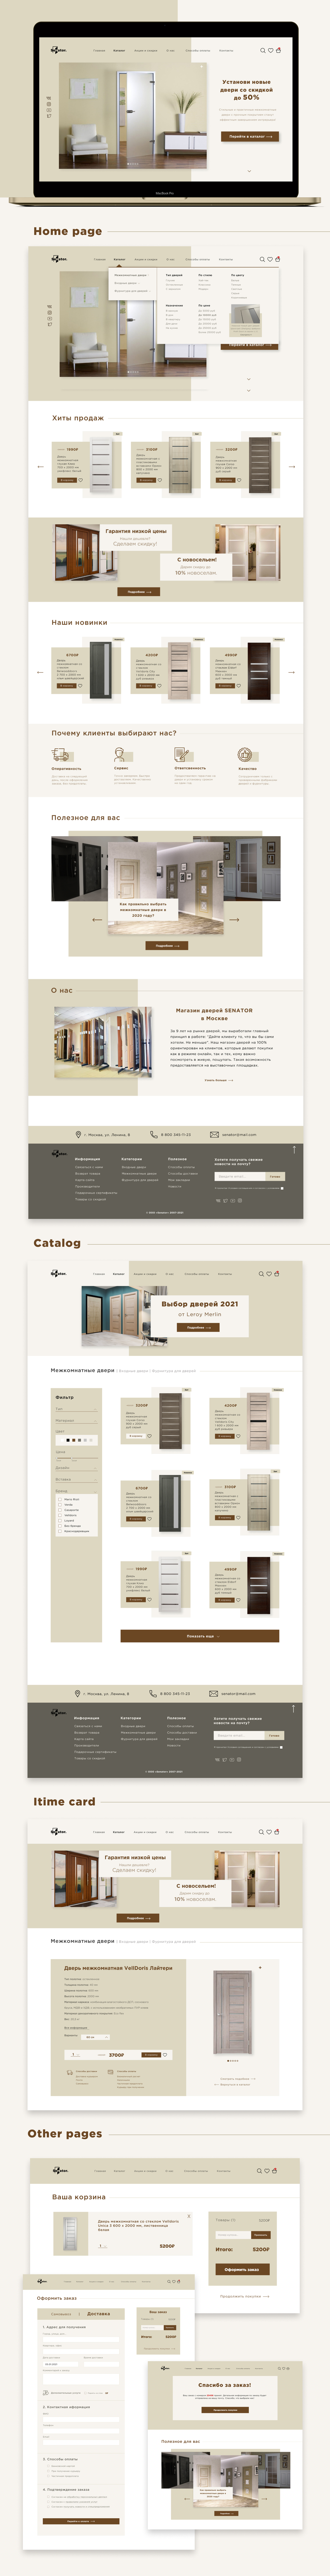 Web-design for online shop doors